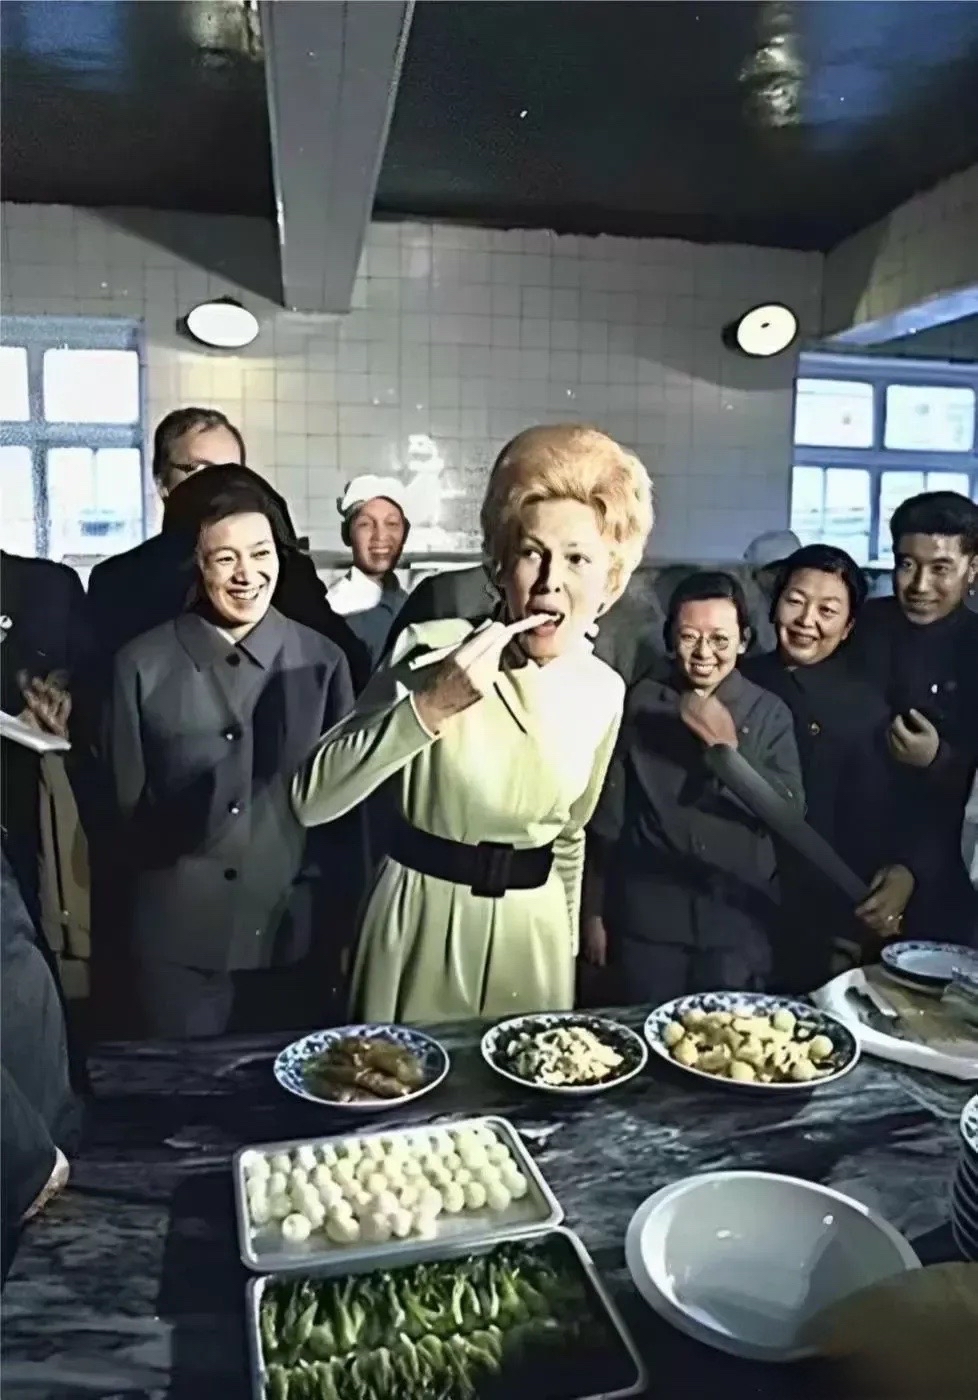 尼克松夫人拿着筷子品尝中国美食的照片